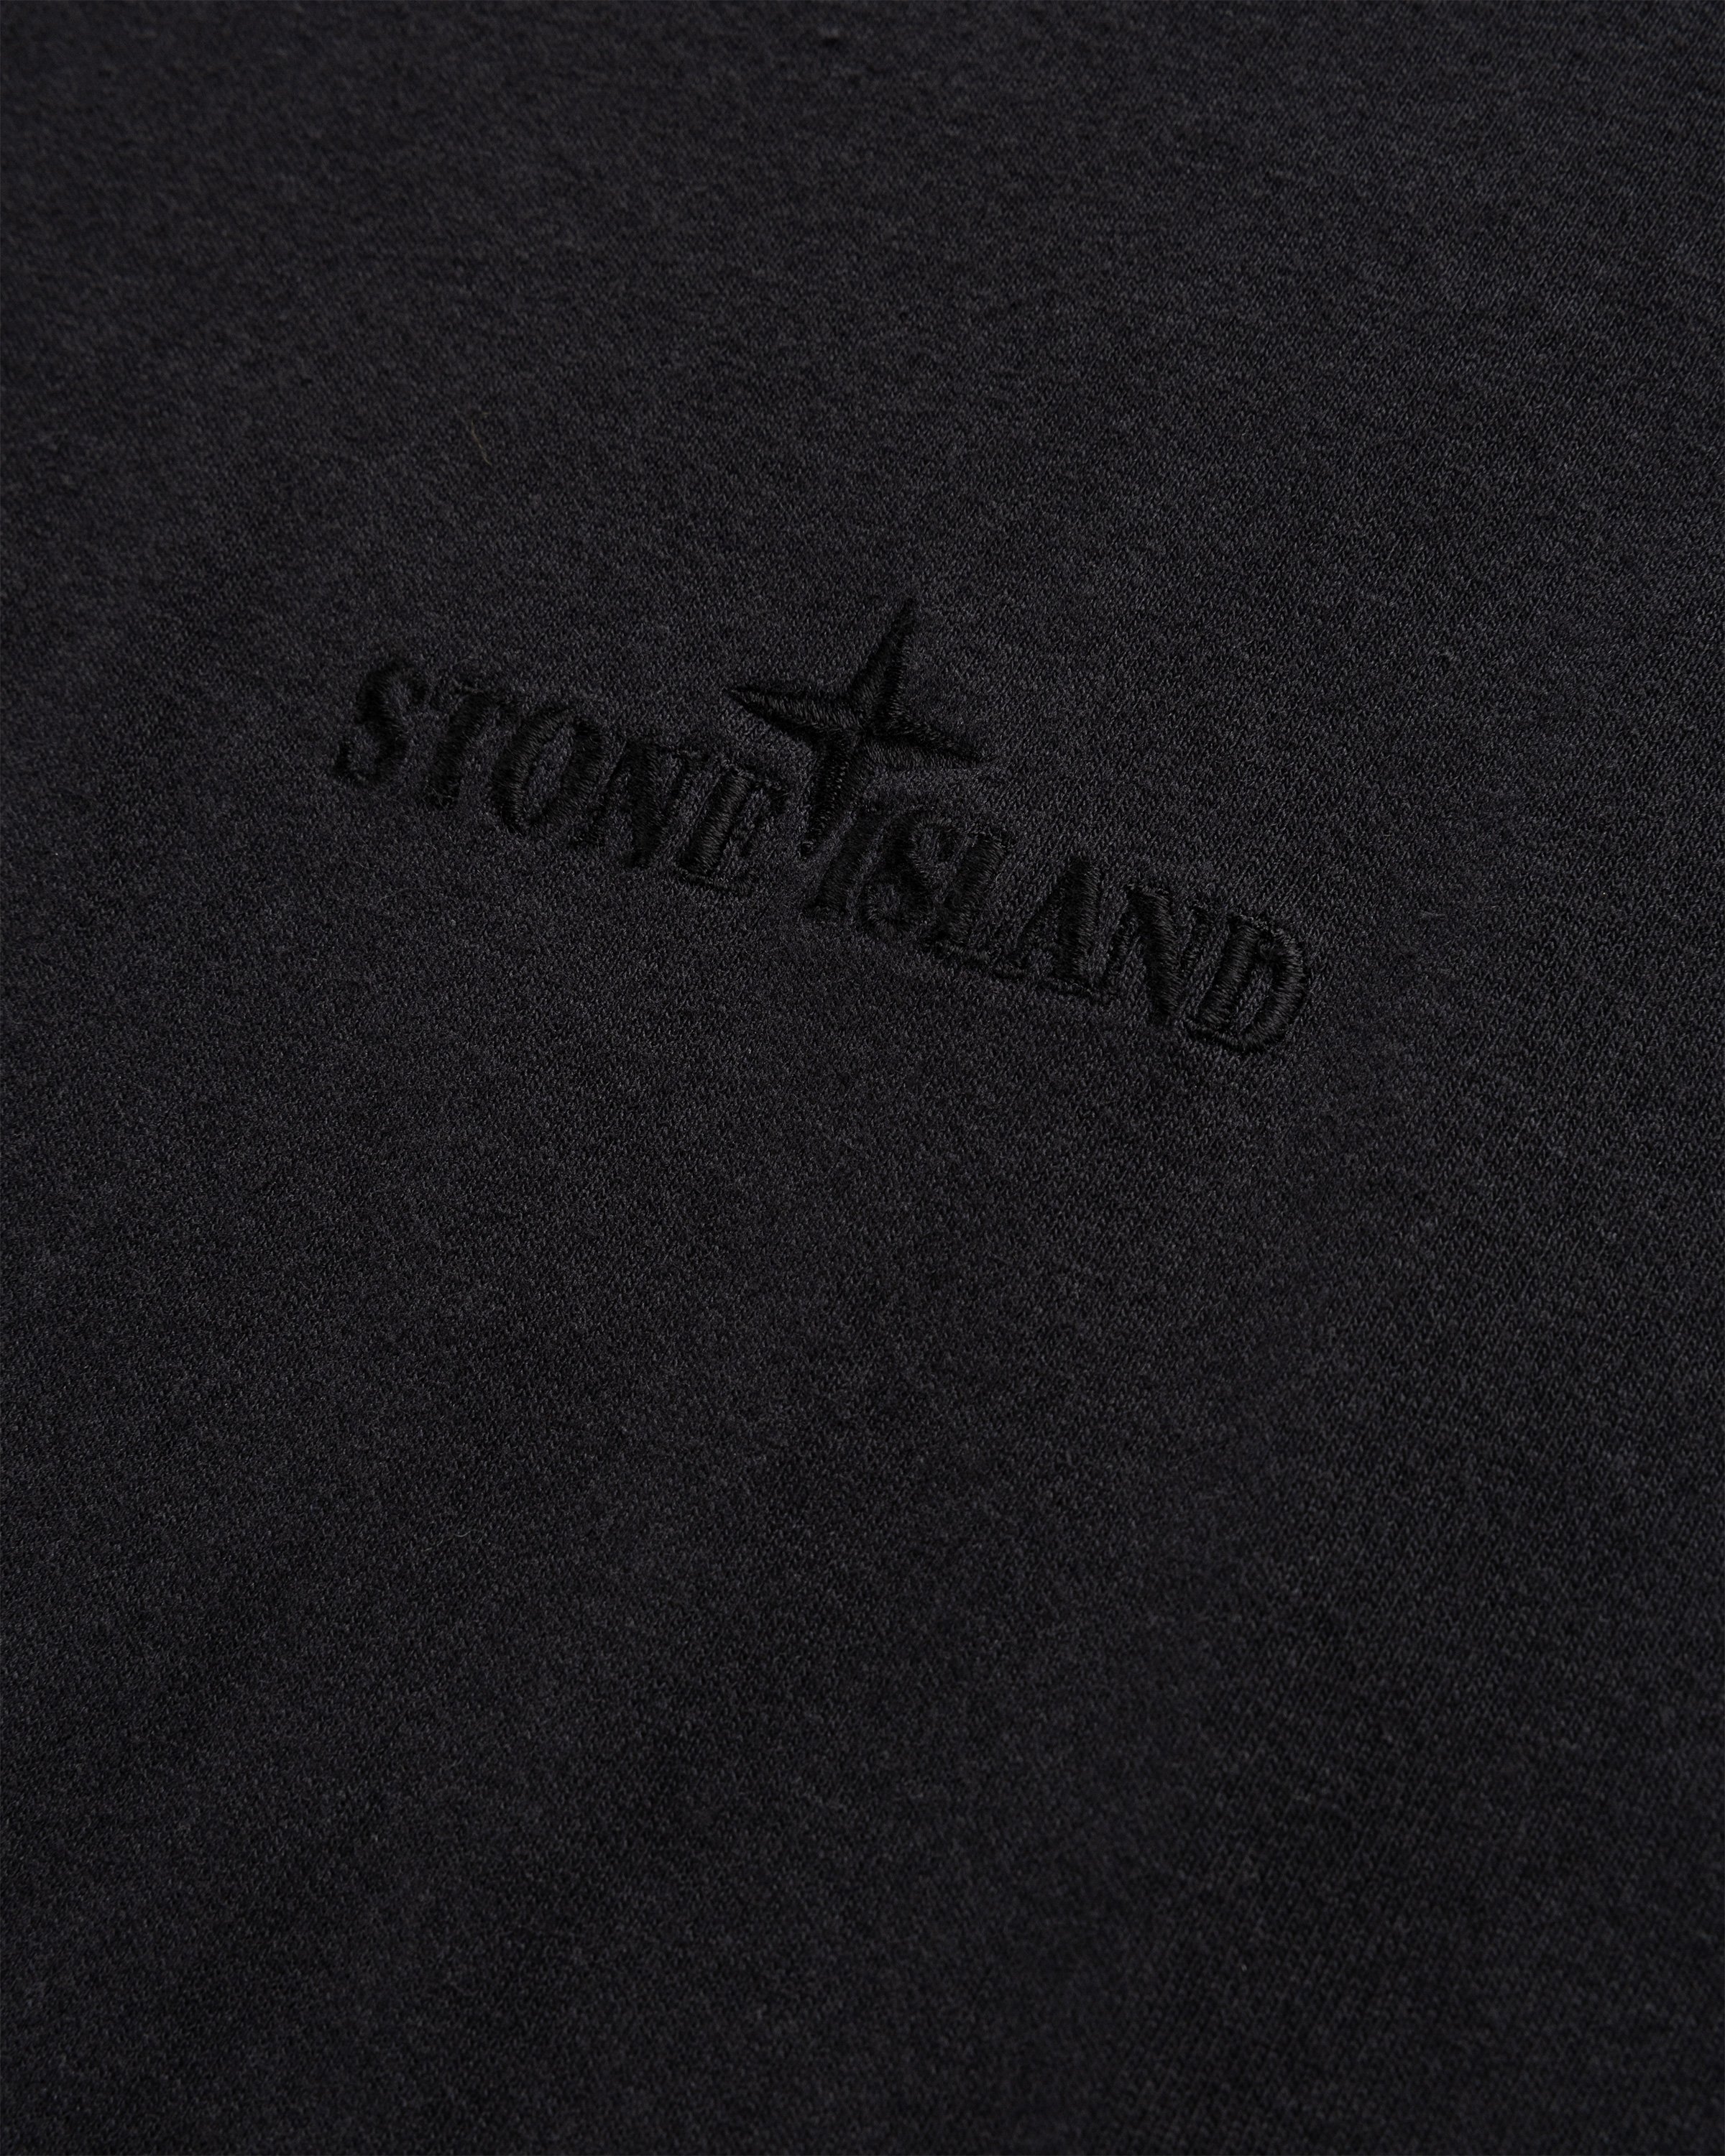 Stone Island - Garment-Dyed Logo T-Shirt Black - Clothing - Black - Image 7